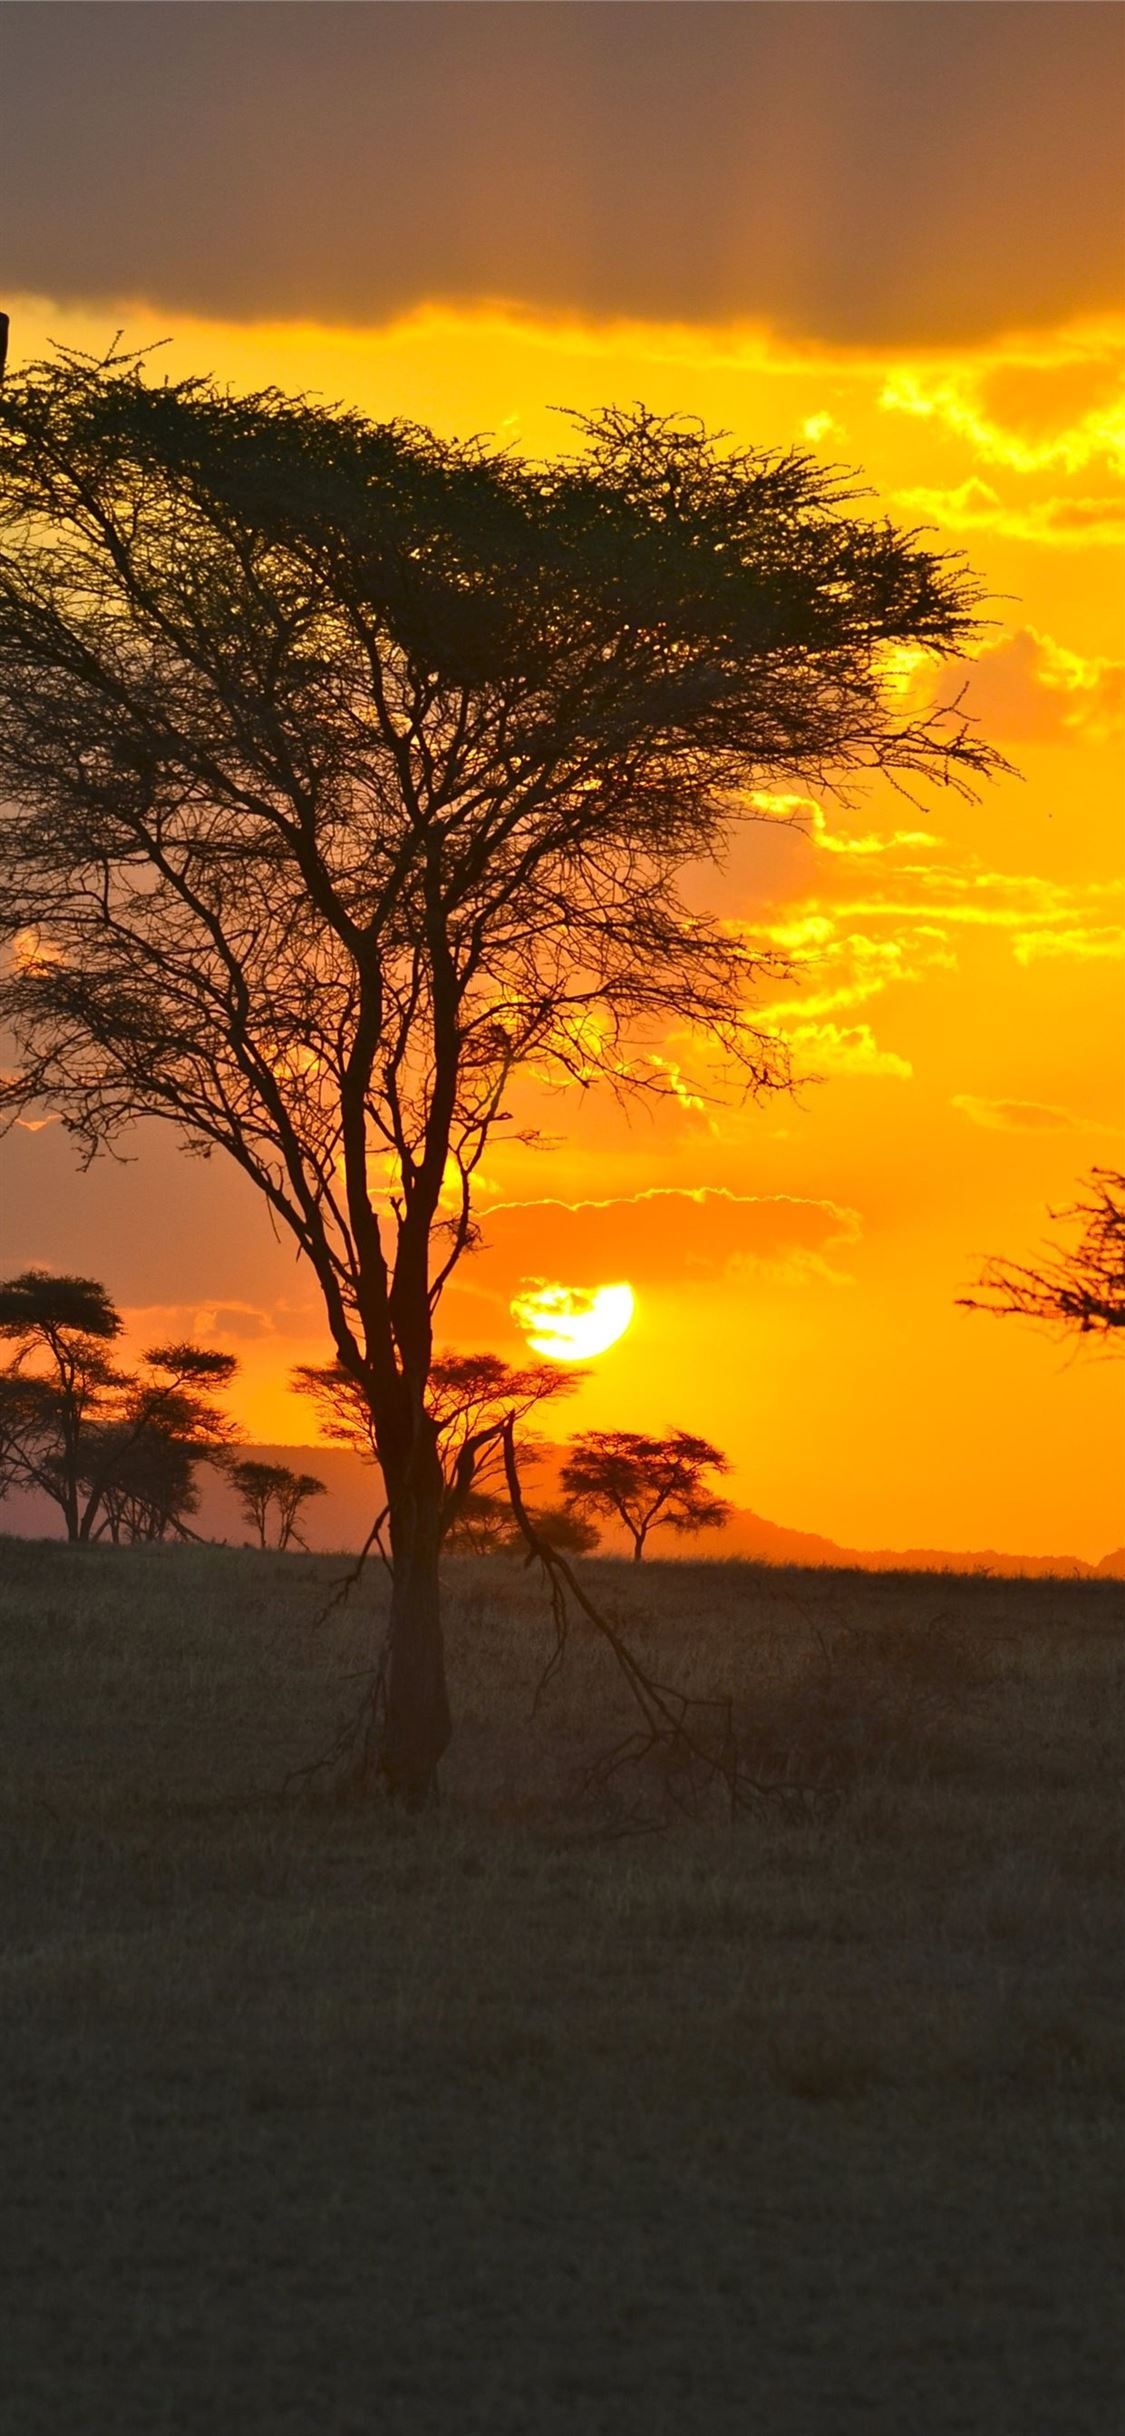 Serengeti sunset, Beautiful landscapes, Tanzania's beauty, Natural wonder, 1130x2440 HD Handy